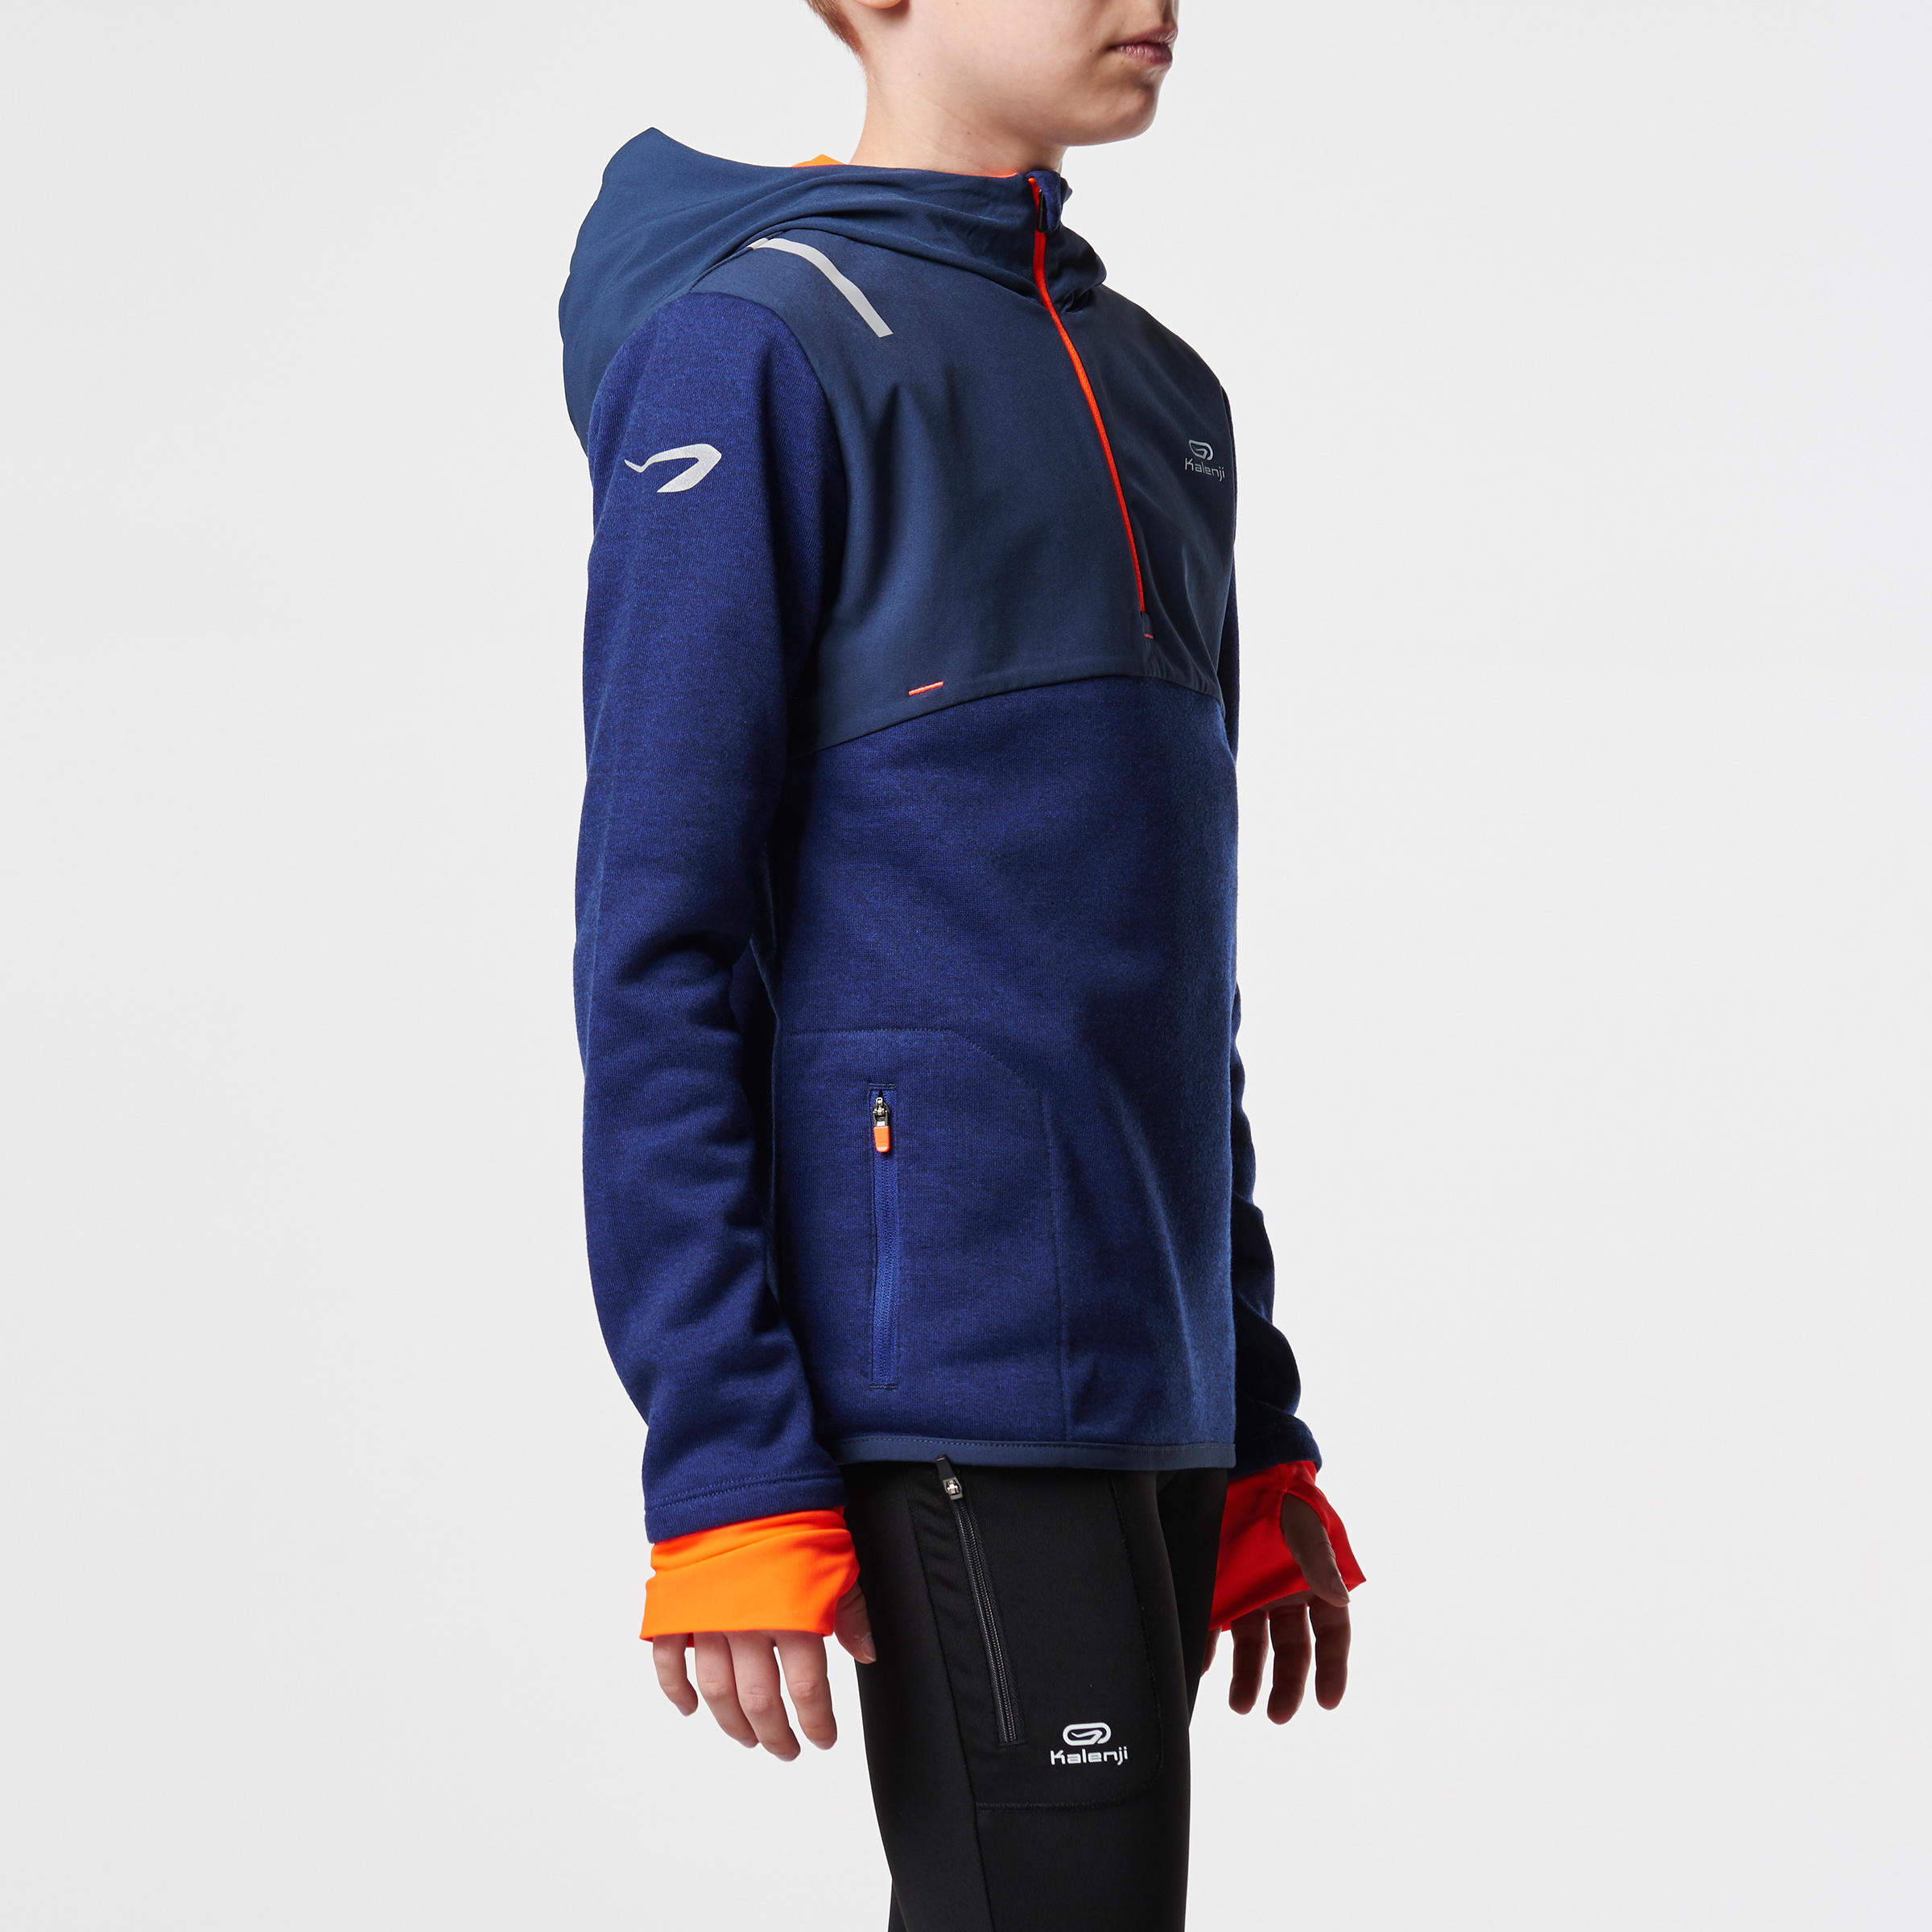 Elio Children's Running Hooded Jersey - Blue/Orange
 3/15